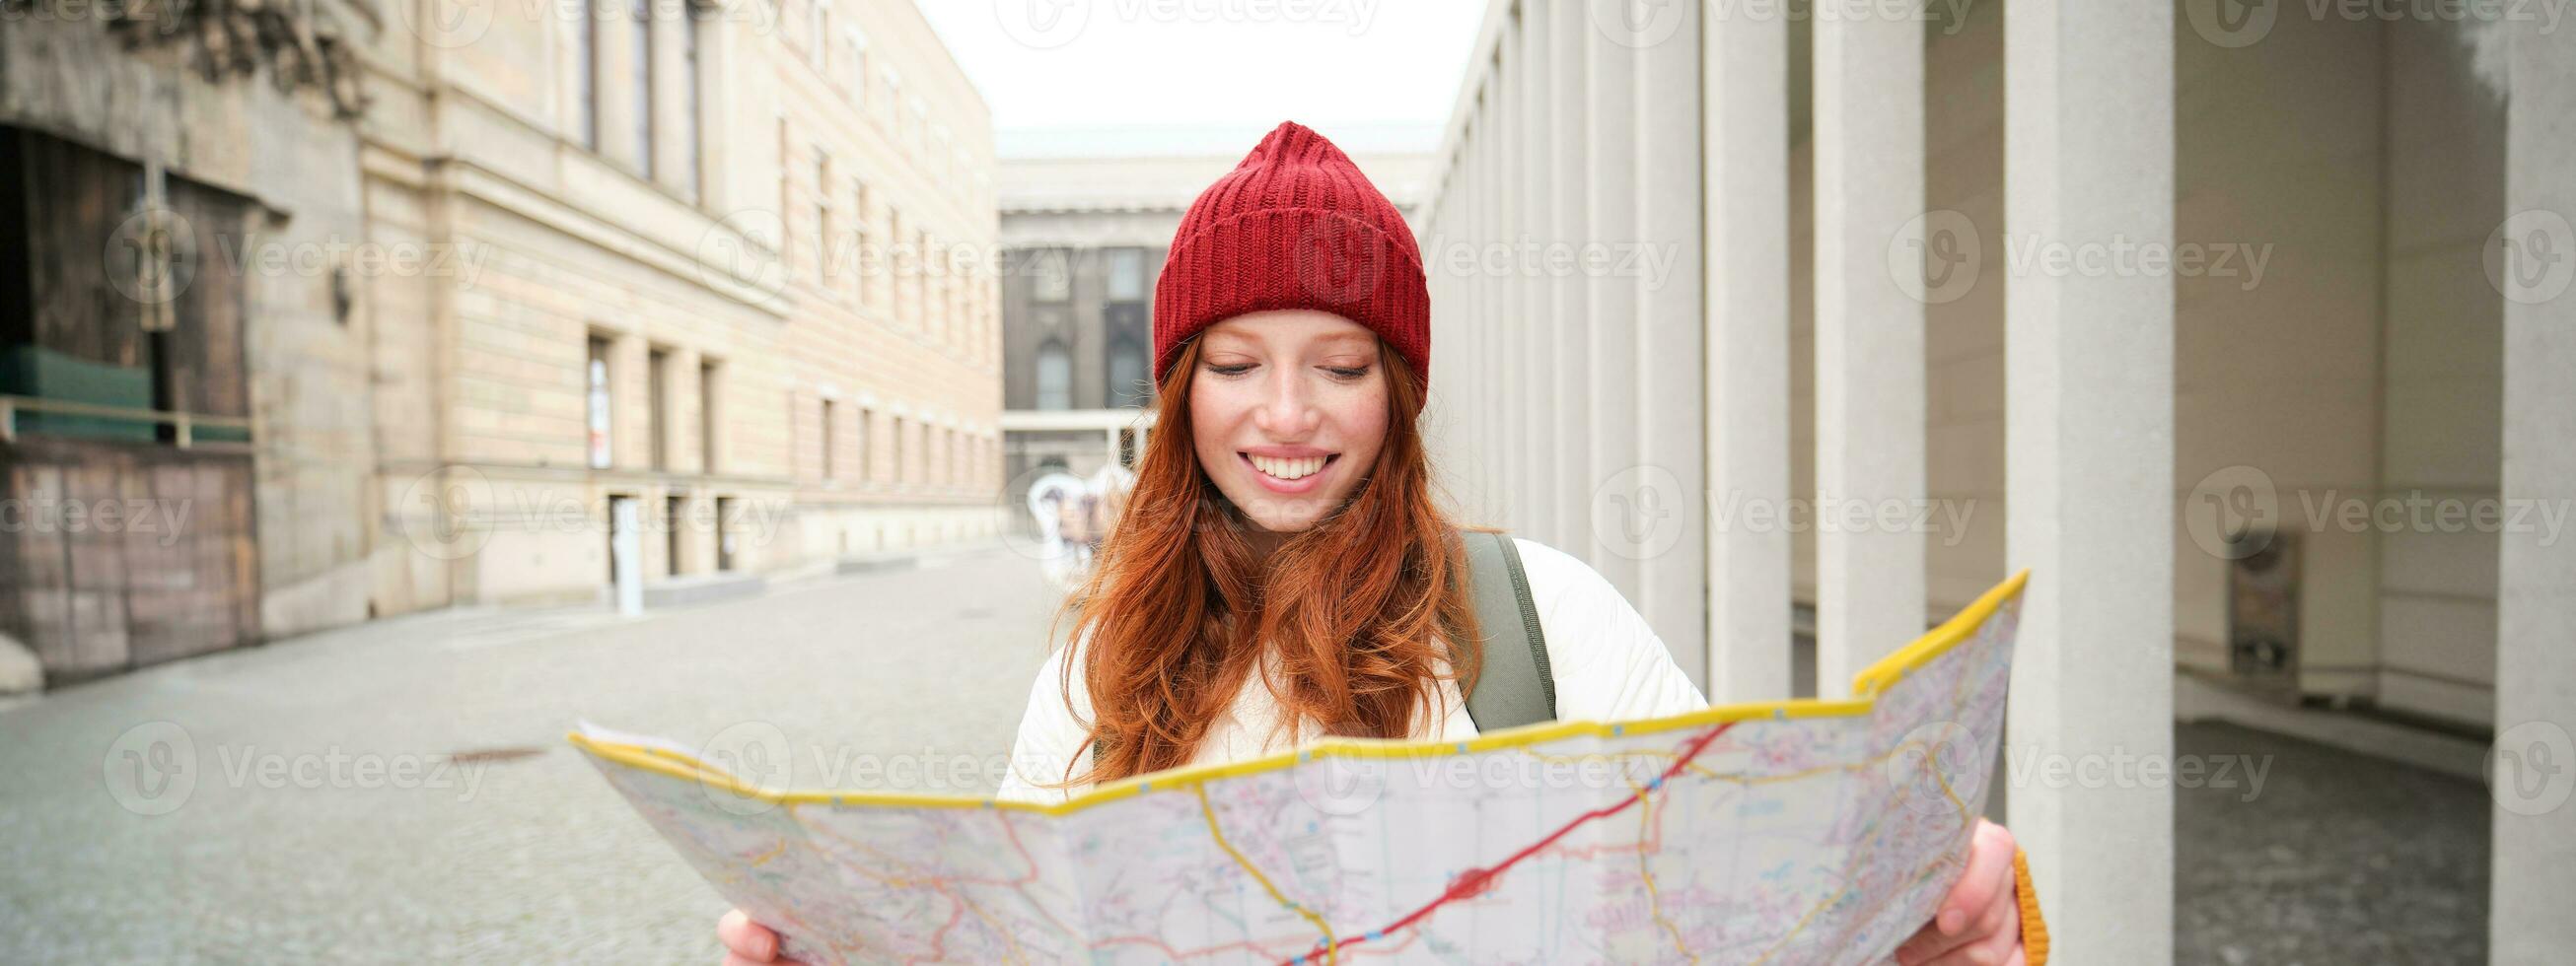 rödhårig flicka, turist utforskar stad, utseende på papper Karta till hitta sätt för historisk landmärken, kvinna på henne resa runt om euope sökningar för sightseeing foto